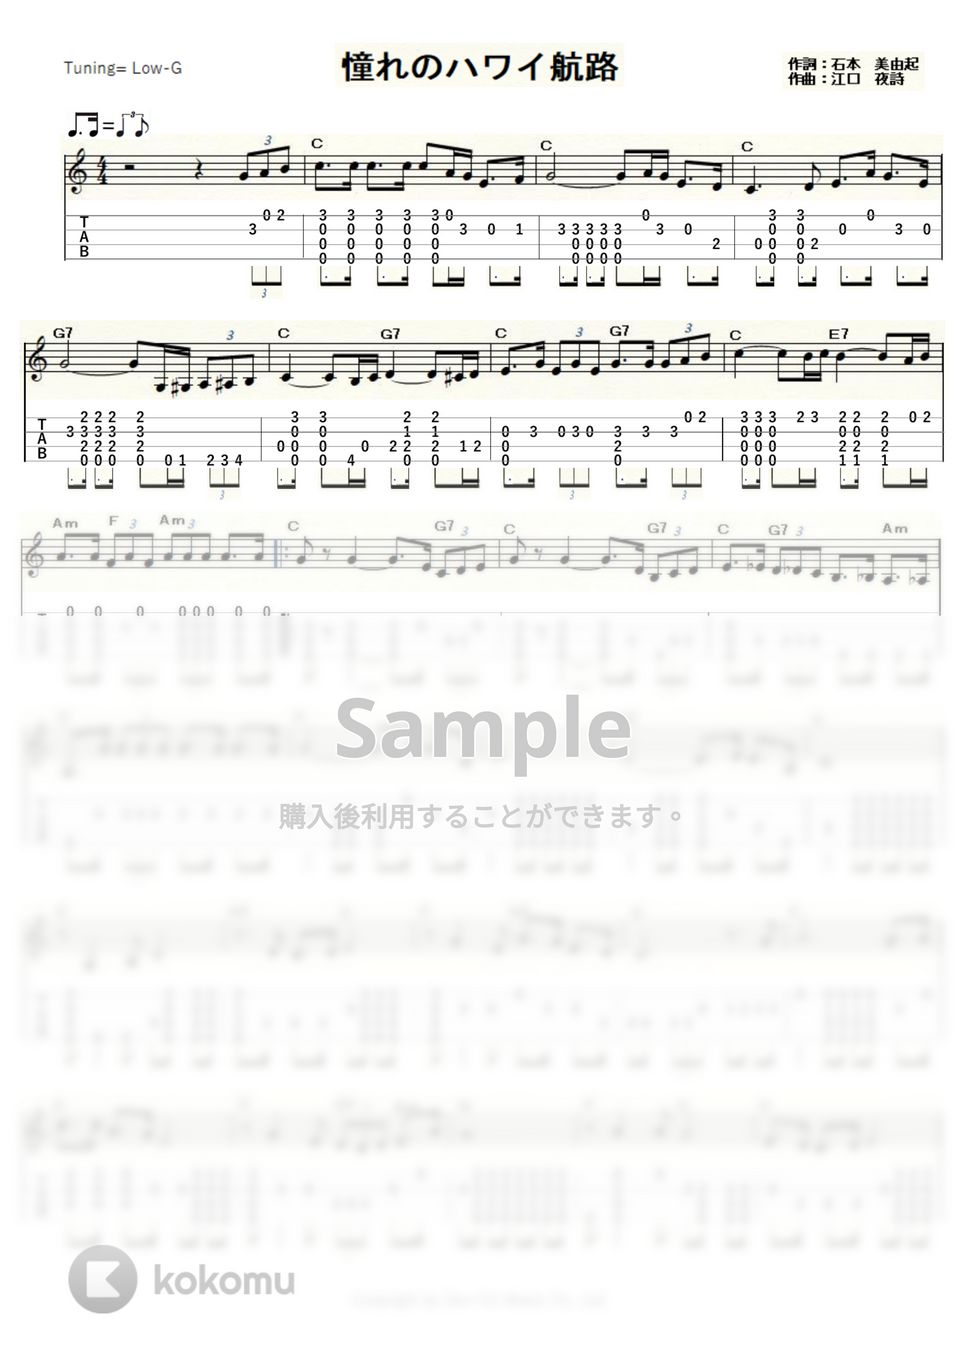 岡晴夫 - 憧れのハワイ航路 (ｳｸﾚﾚｿﾛ / Low-G / 中級) by ukulelepapa